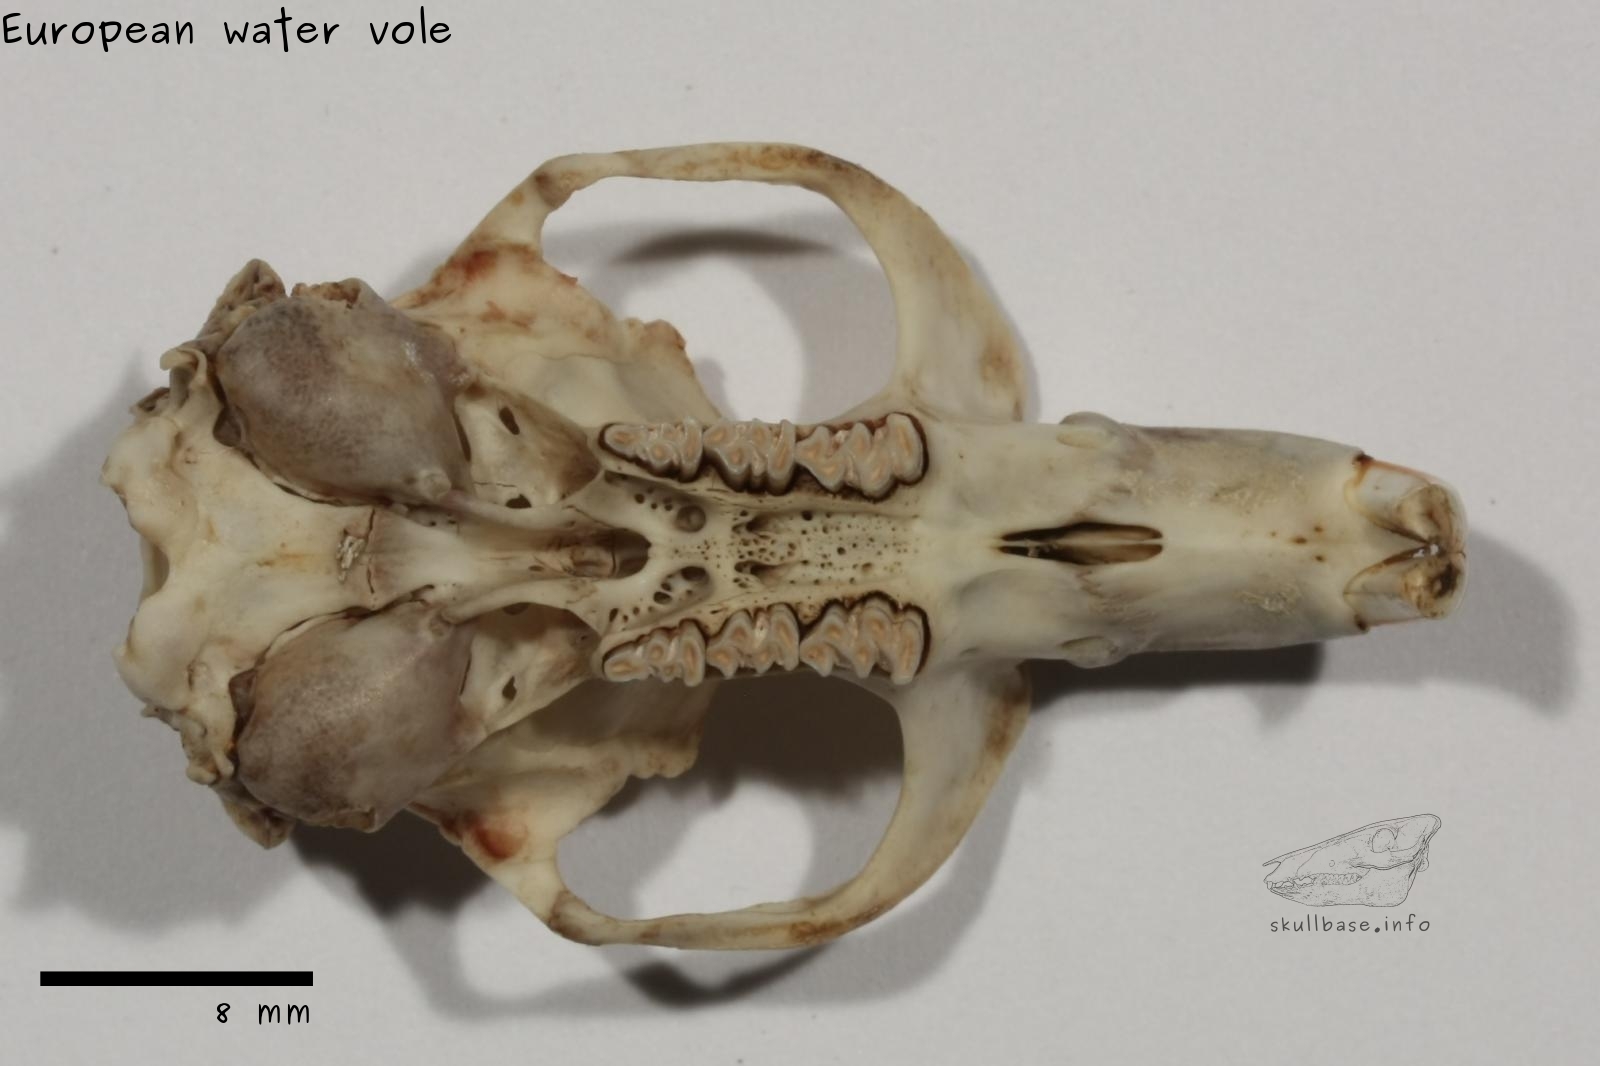 European water vole (Arvicola amphibius) skull ventral view